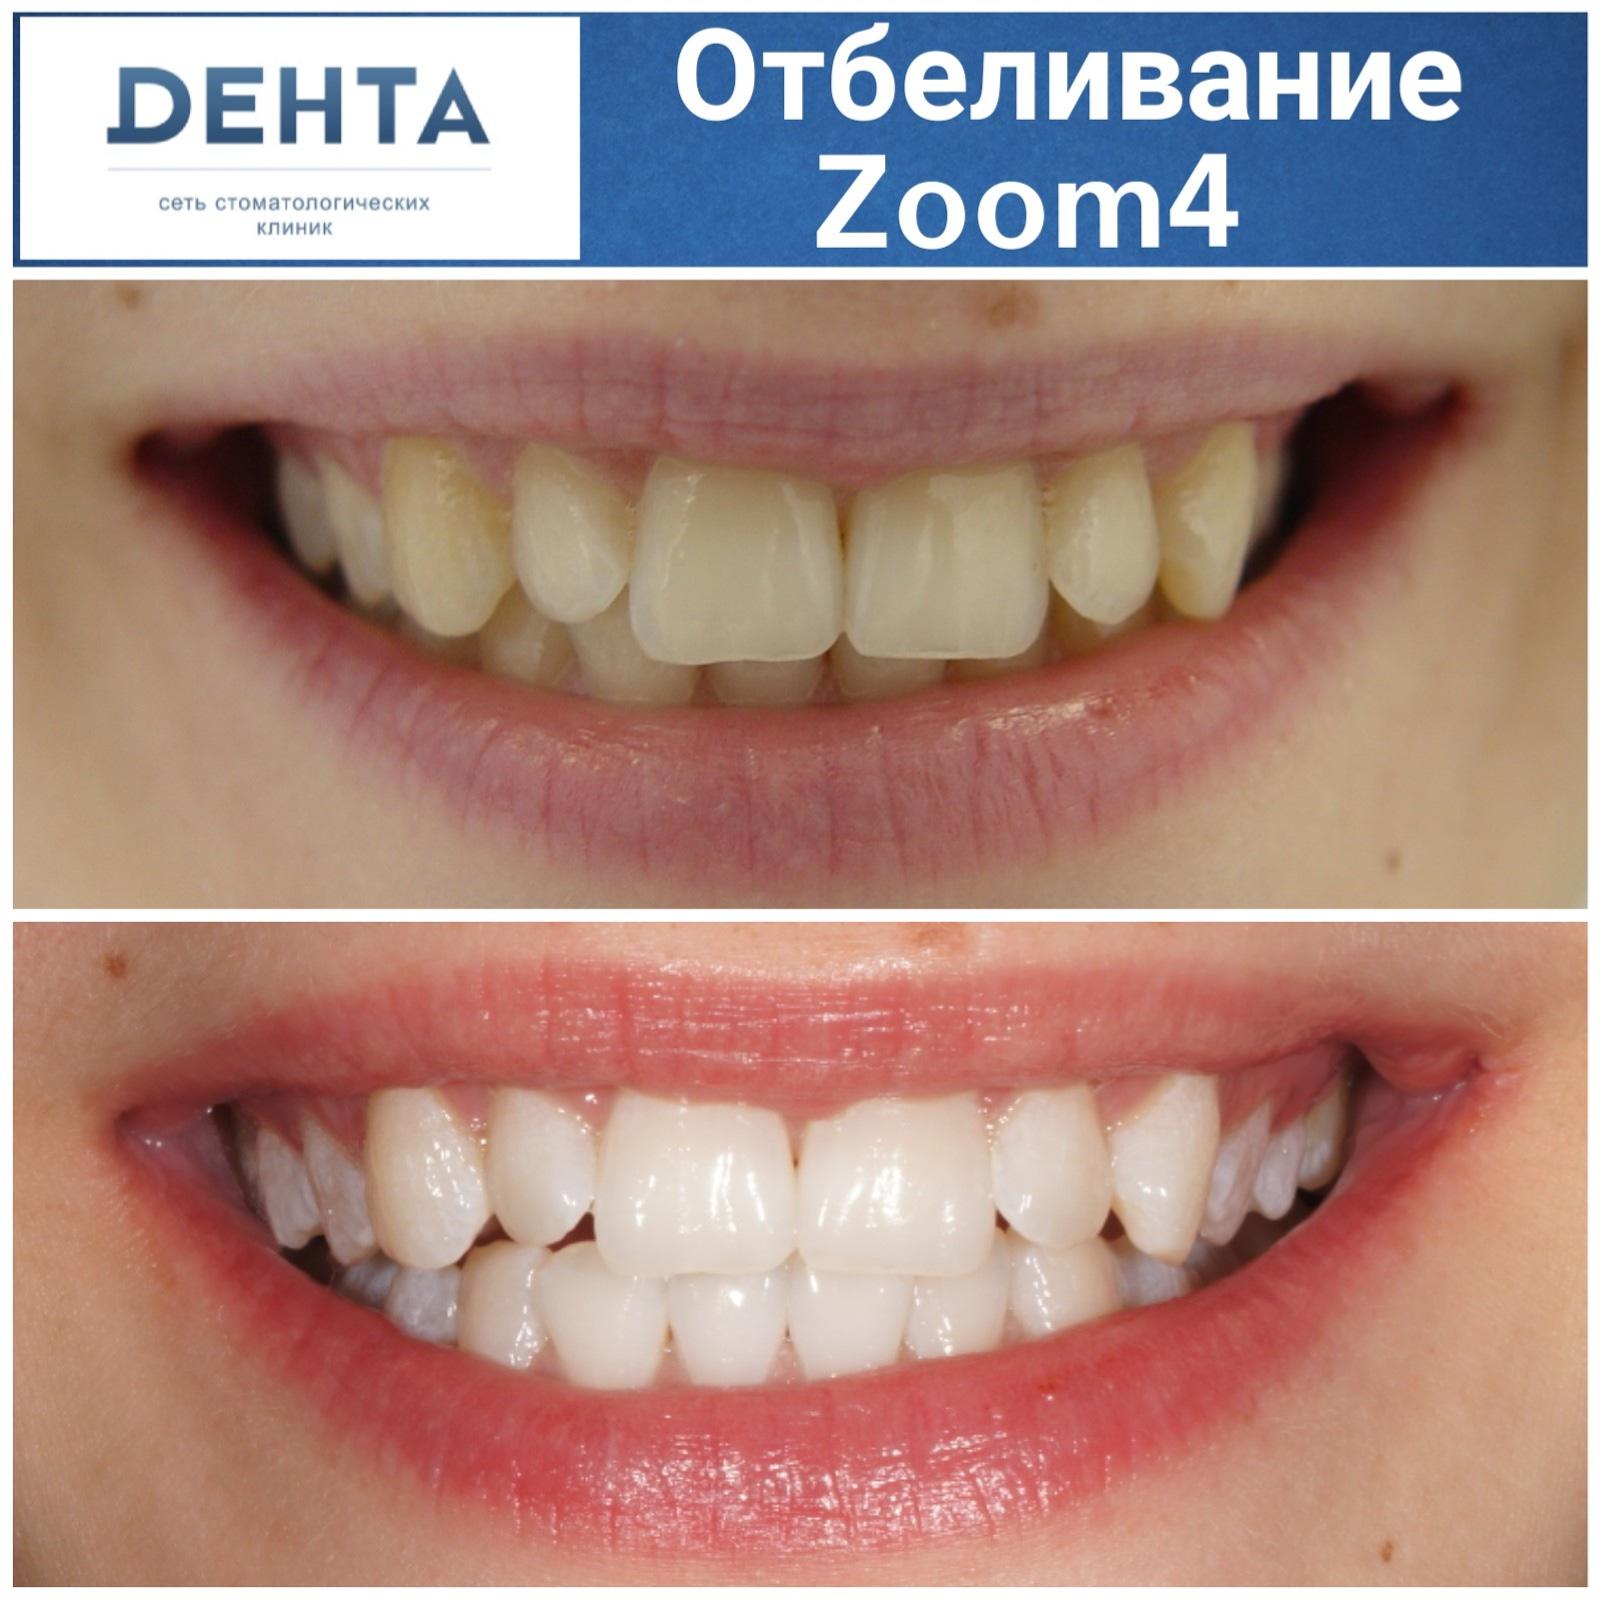 Отбеливание зубов отзывы цены. Отбеливание зубов результат. Зубы до и после отбеливания.